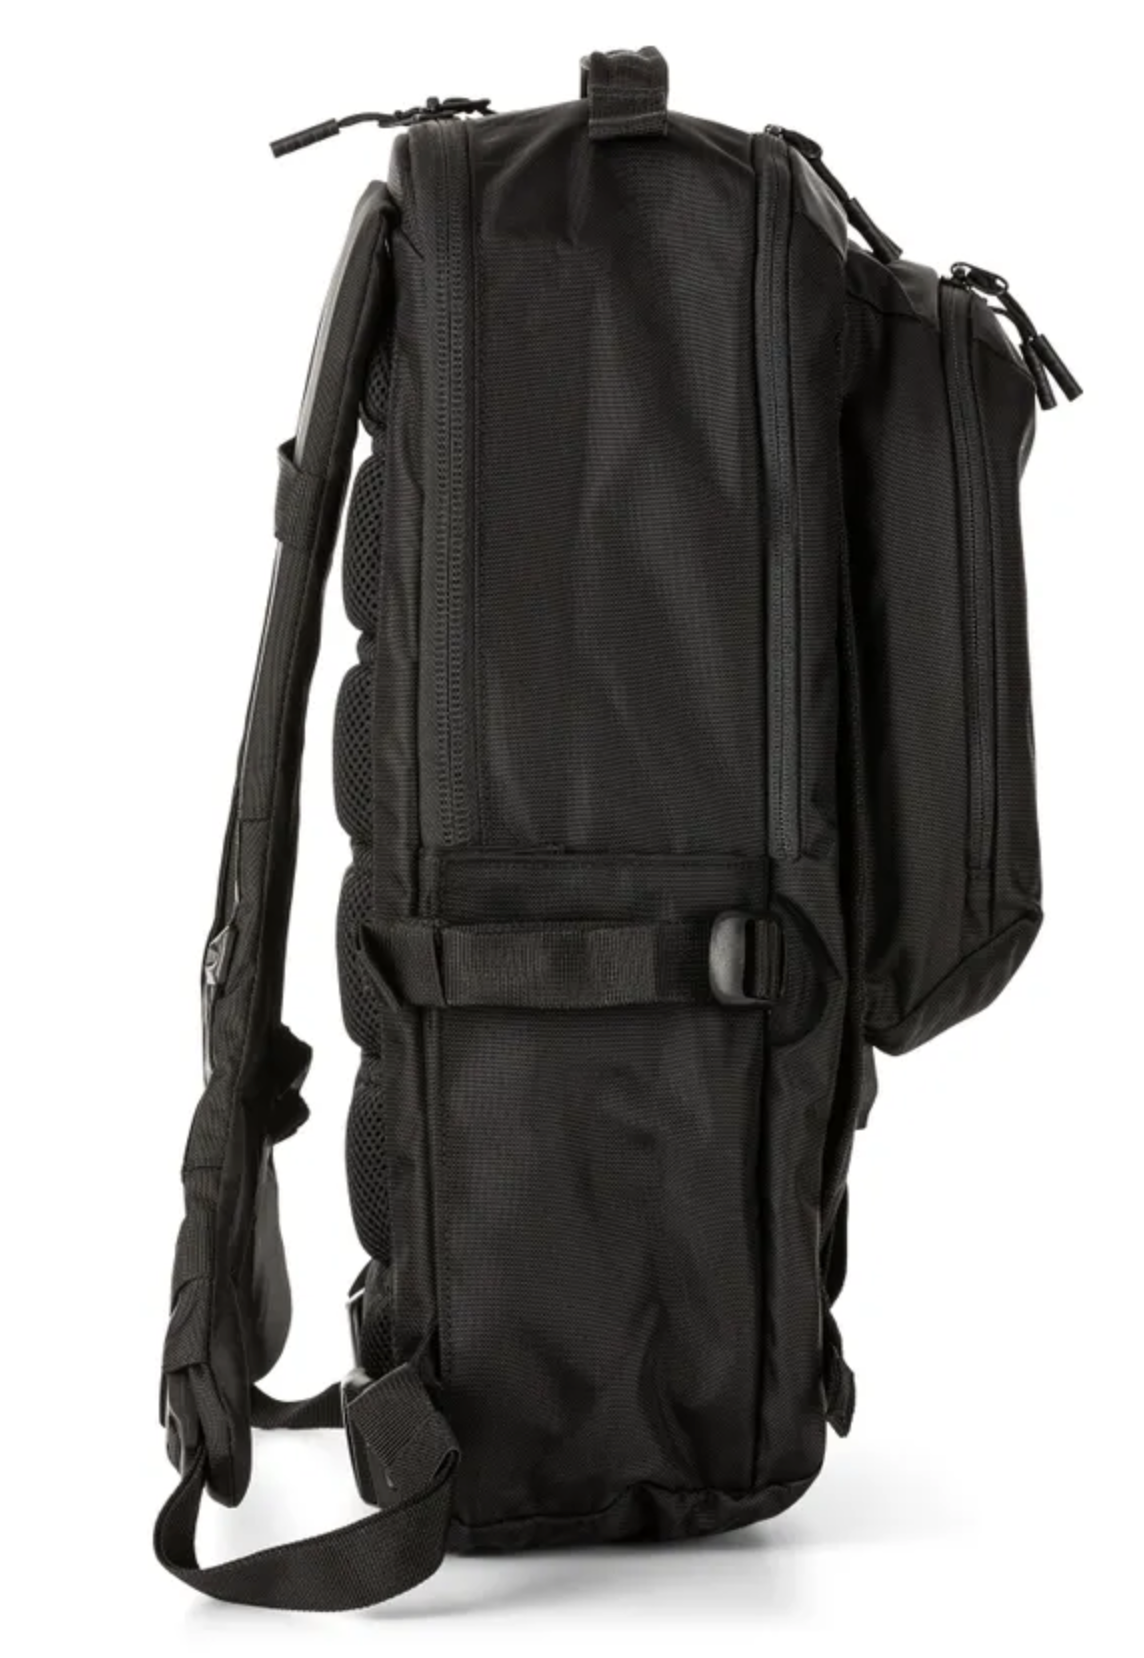 5.11 - LV18 Backpack 2.0 - 30L - Black (019)